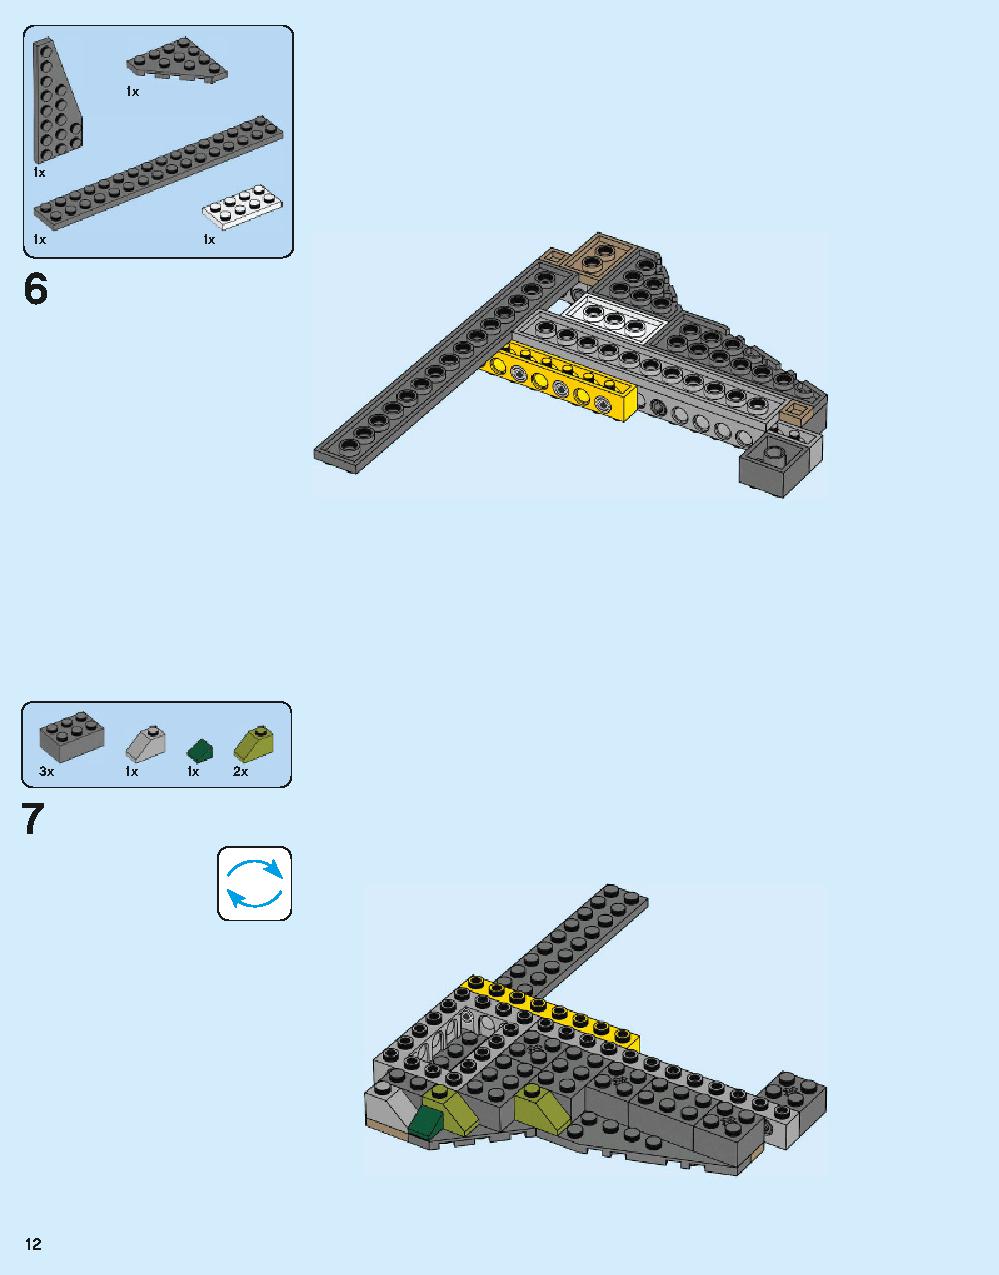 ホグワーツ城 71043 レゴの商品情報 レゴの説明書・組立方法 12 page